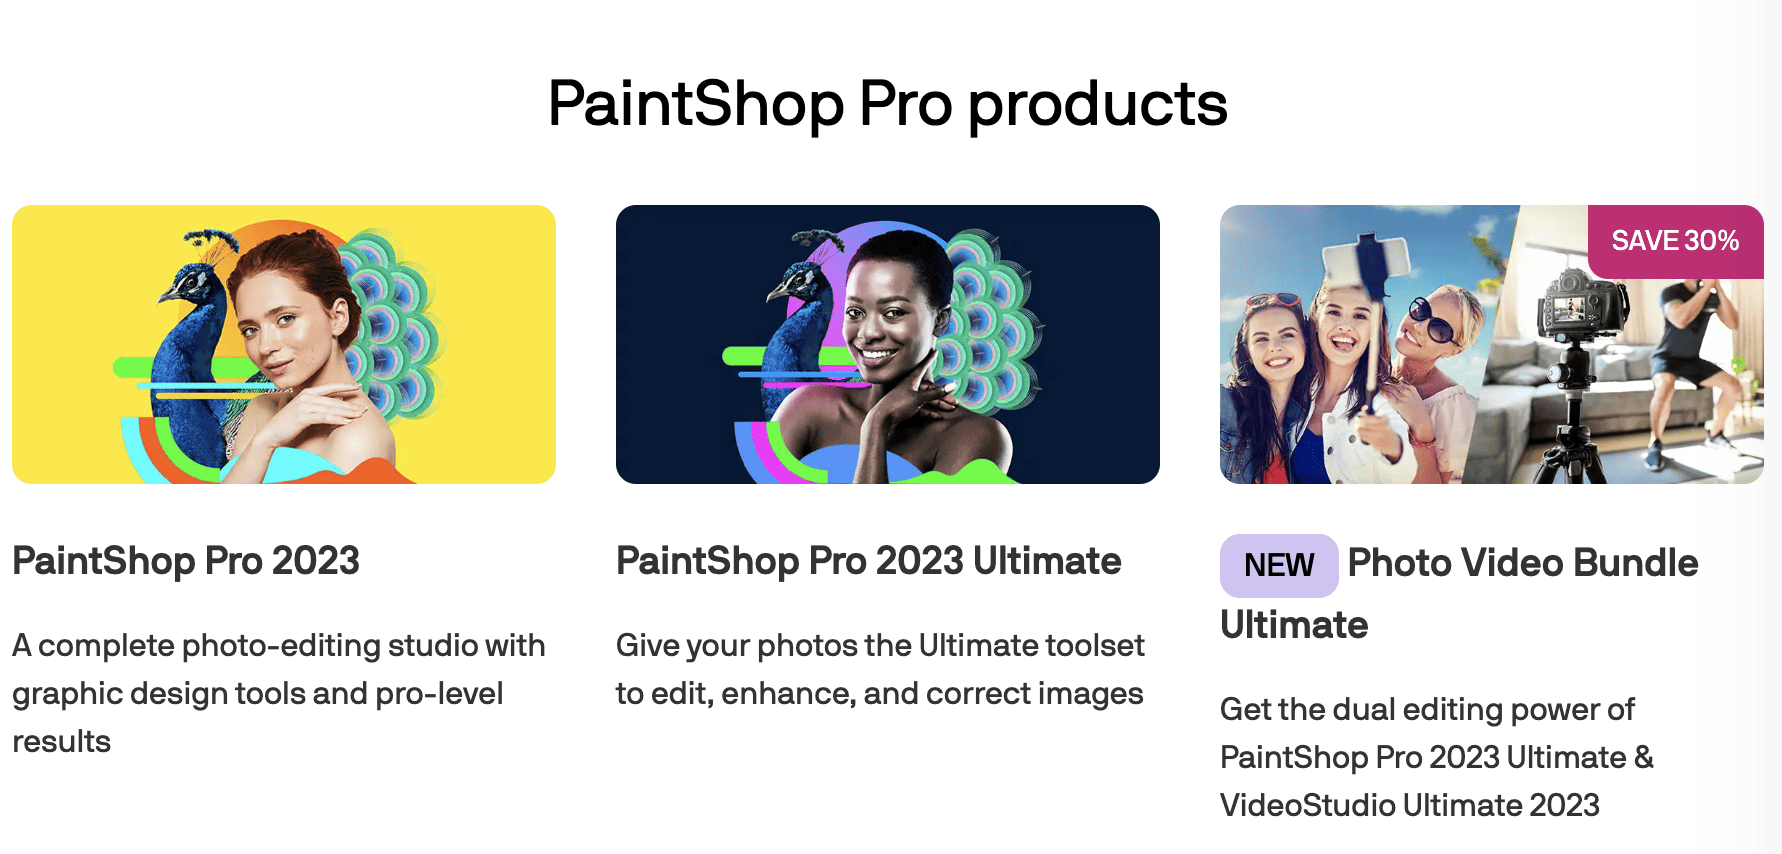 PaintShop Pro plans